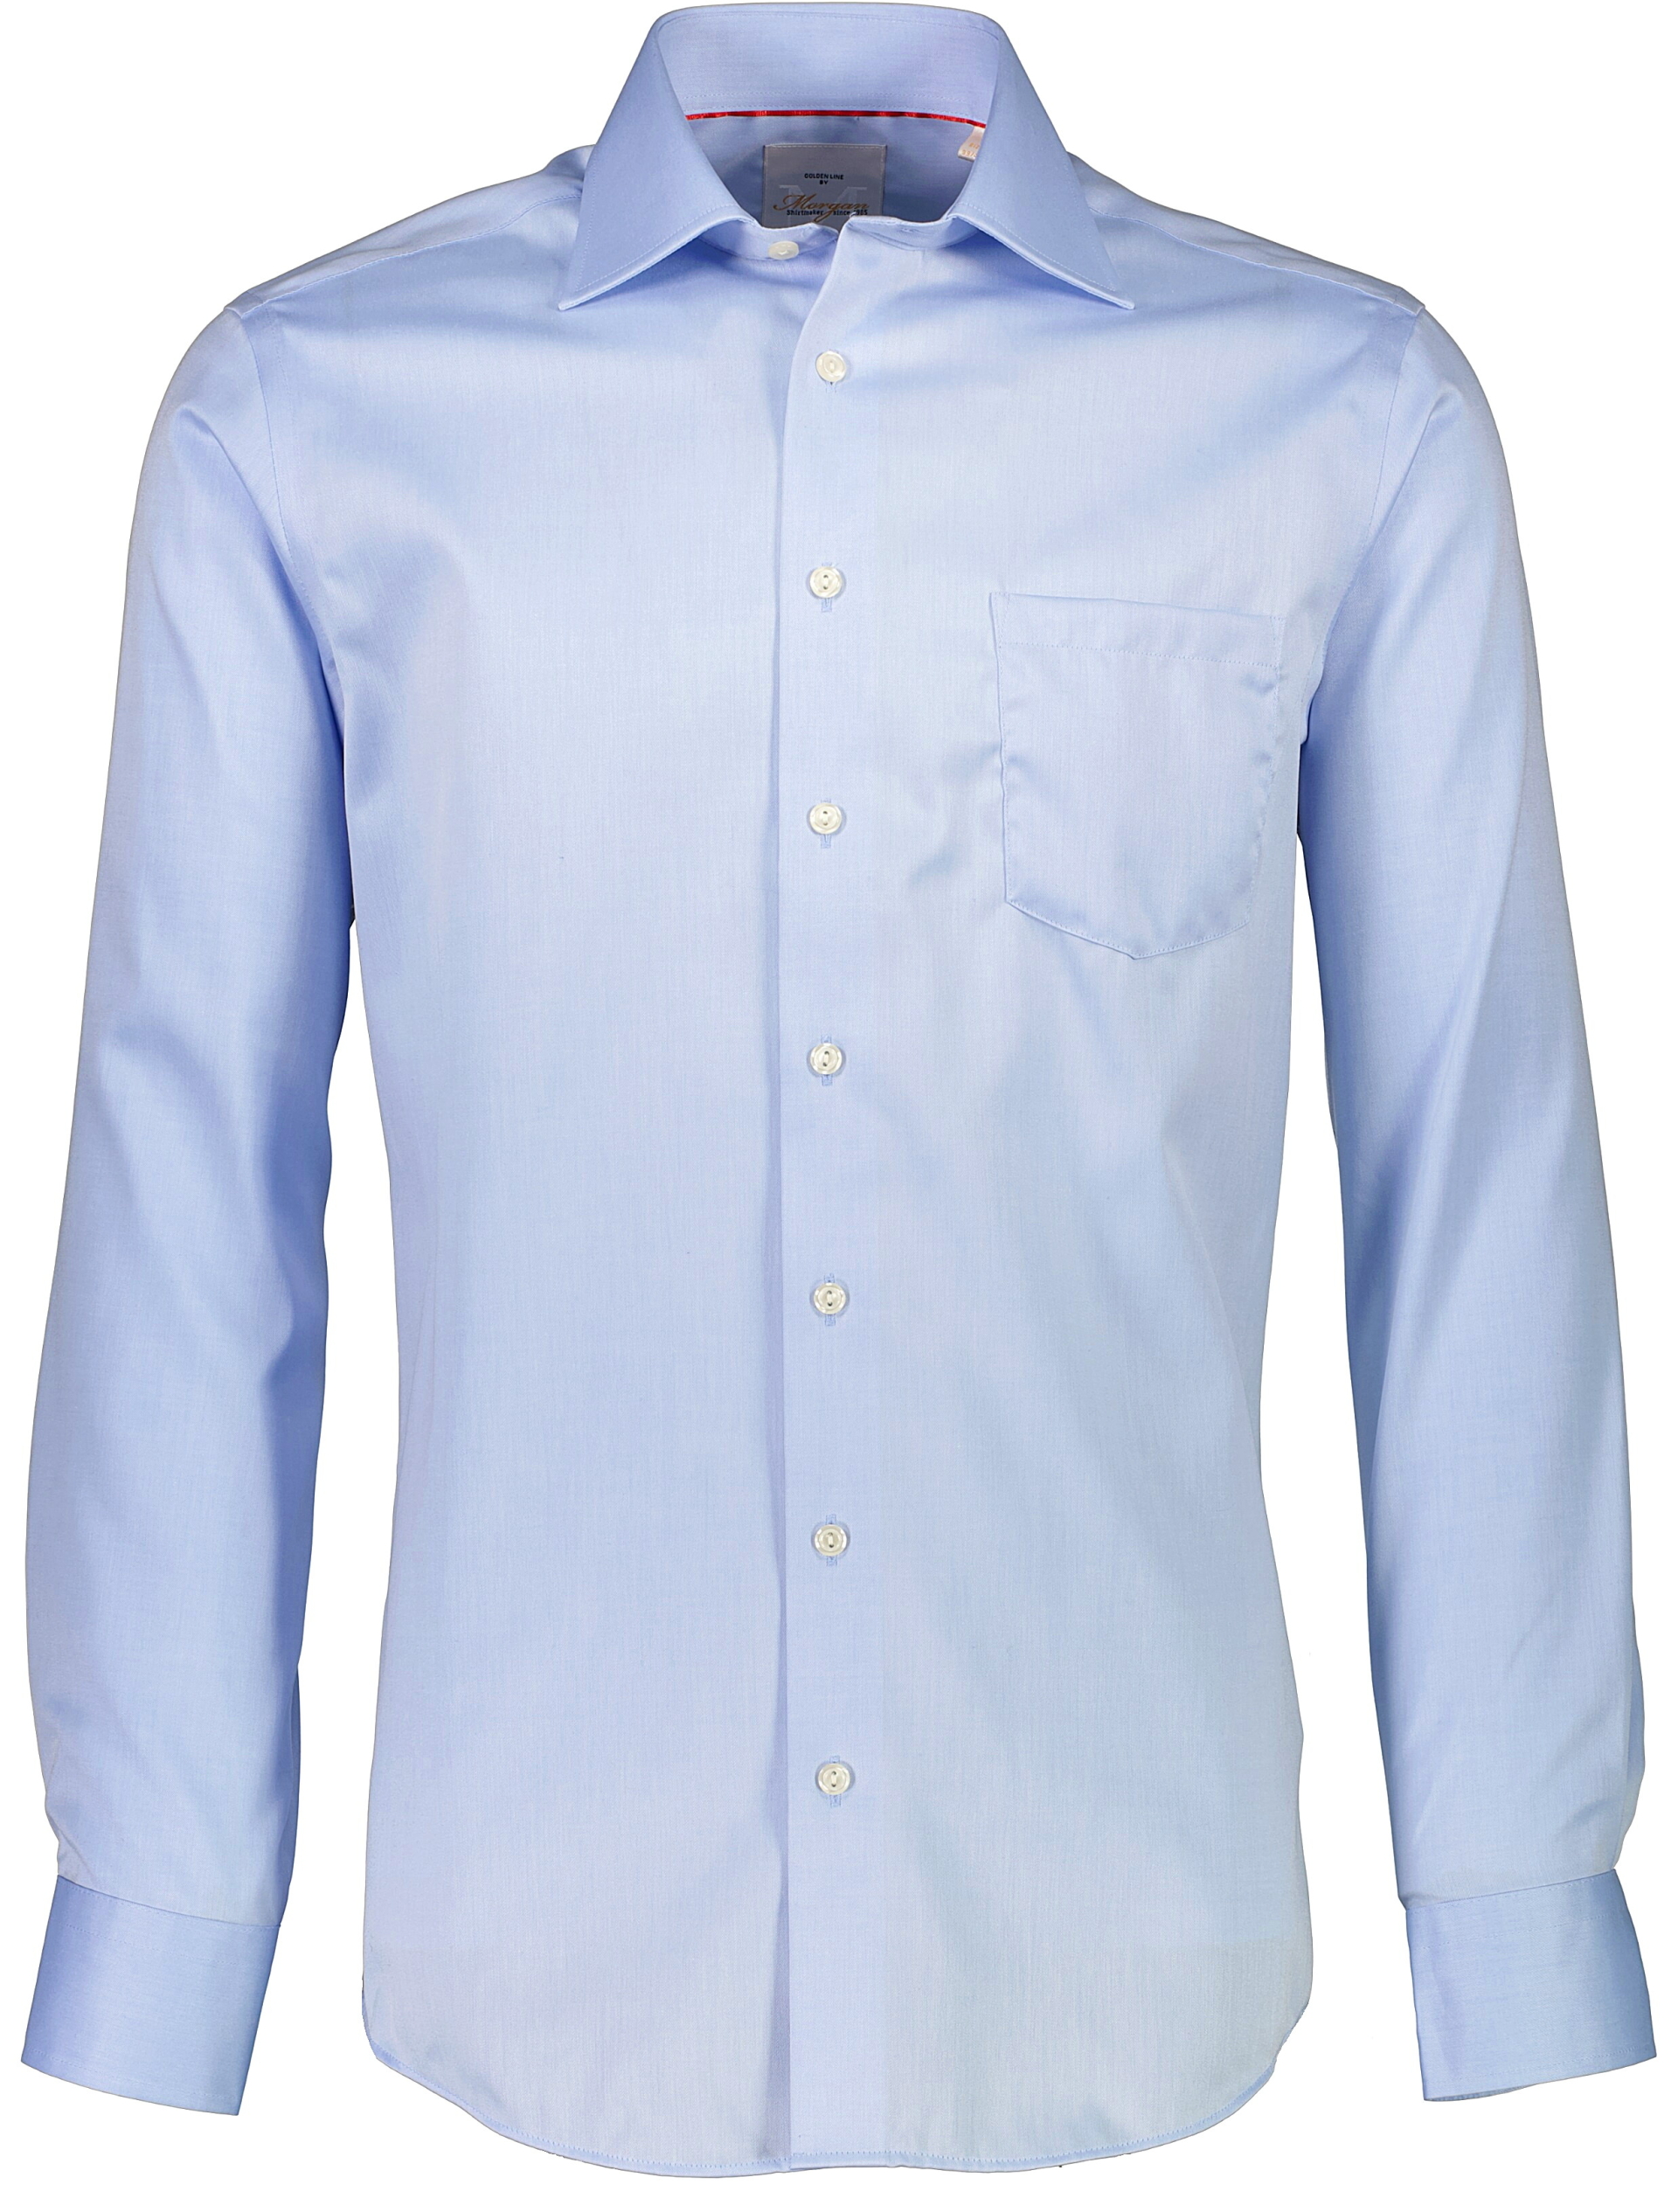 Morgan Business skjorte blå / light blue